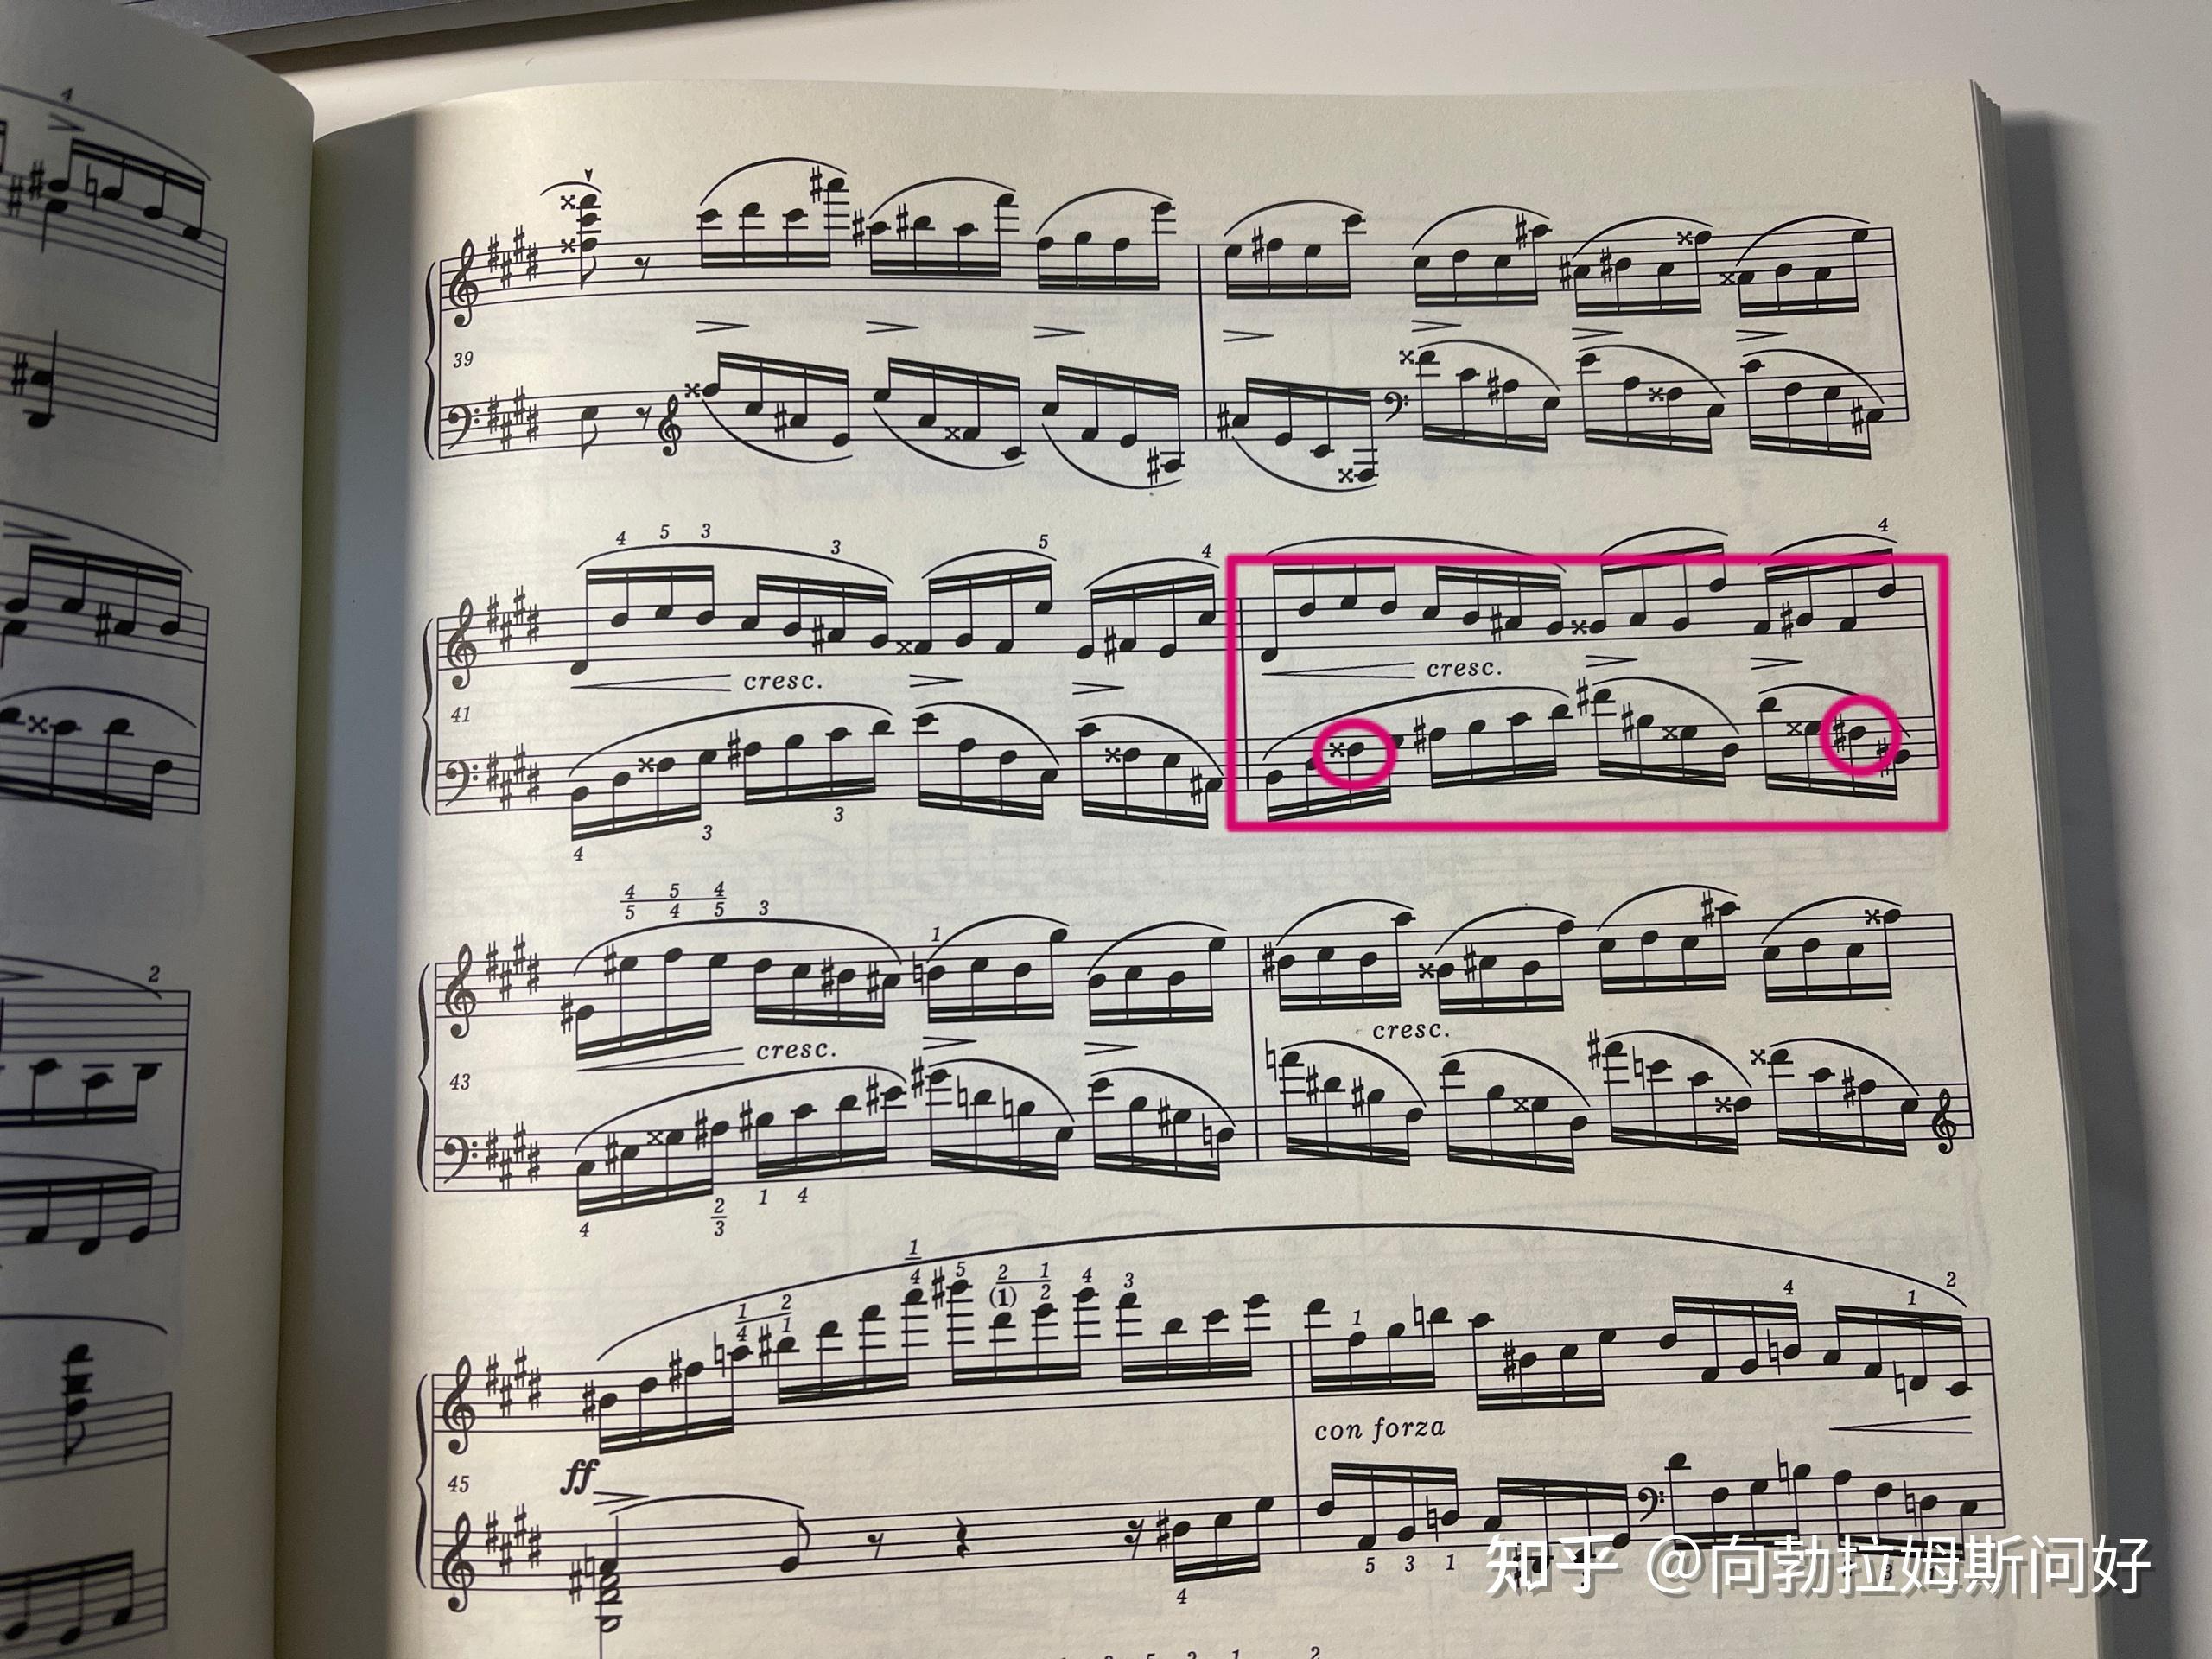 请问肖邦练习曲激流这个小节上的音怎么辨认